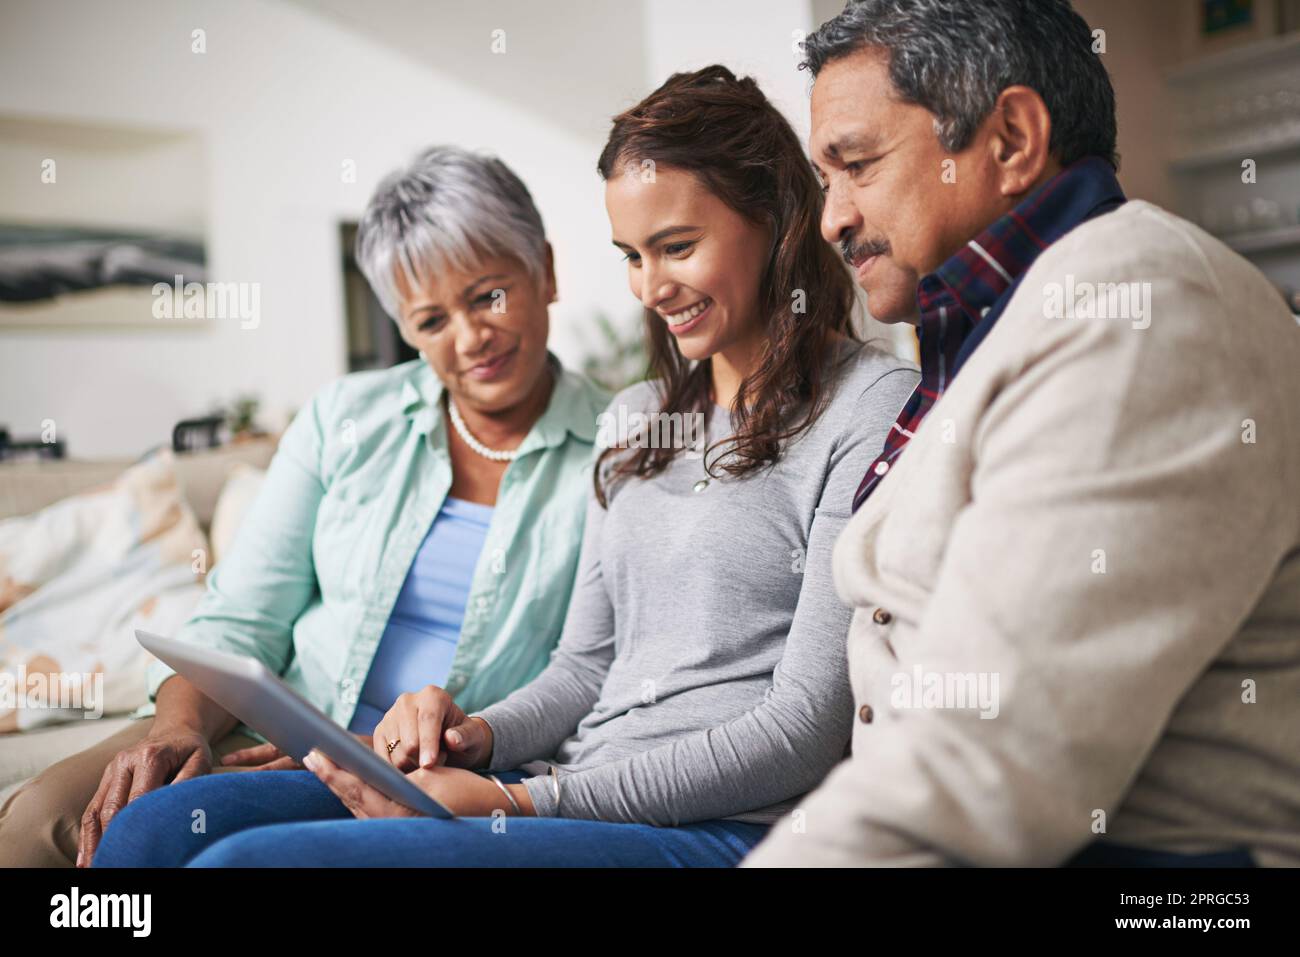 Familienzeit, online. Eine junge Frau zeigt ihren Eltern etwas auf ihrem Tablet, während sie zusammen auf einem Sofa sitzen. Stockfoto